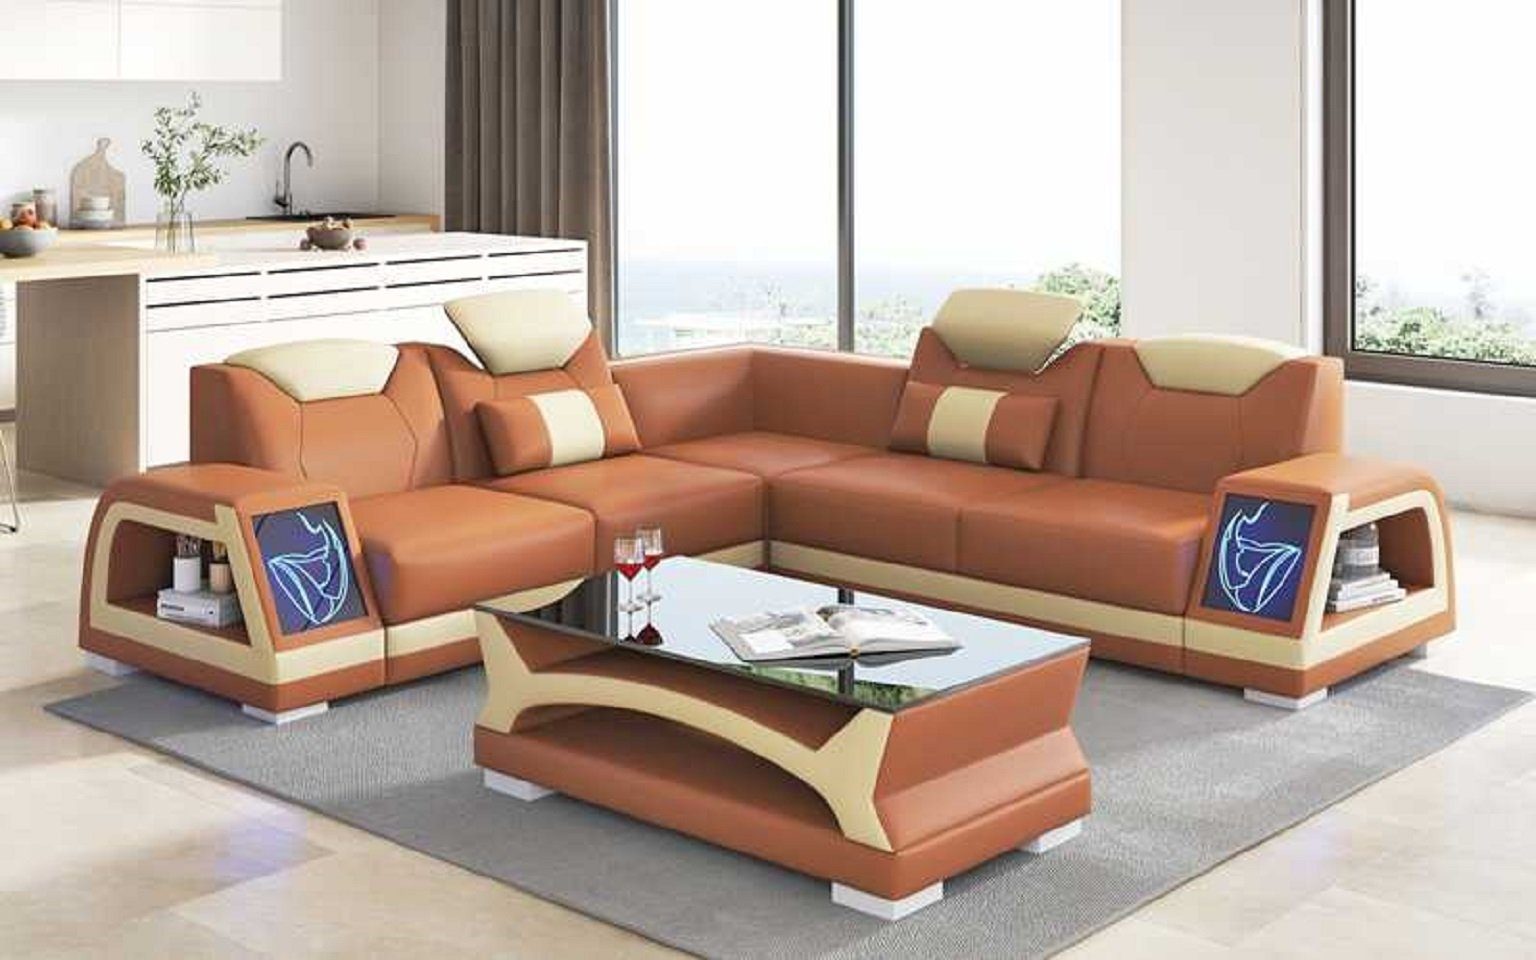 JVmoebel Ecksofa Ecksofa Couchen, Design Luxus Europe Modern Sofa Form Kunstleder Braun L Made 3 in Teile, Couch